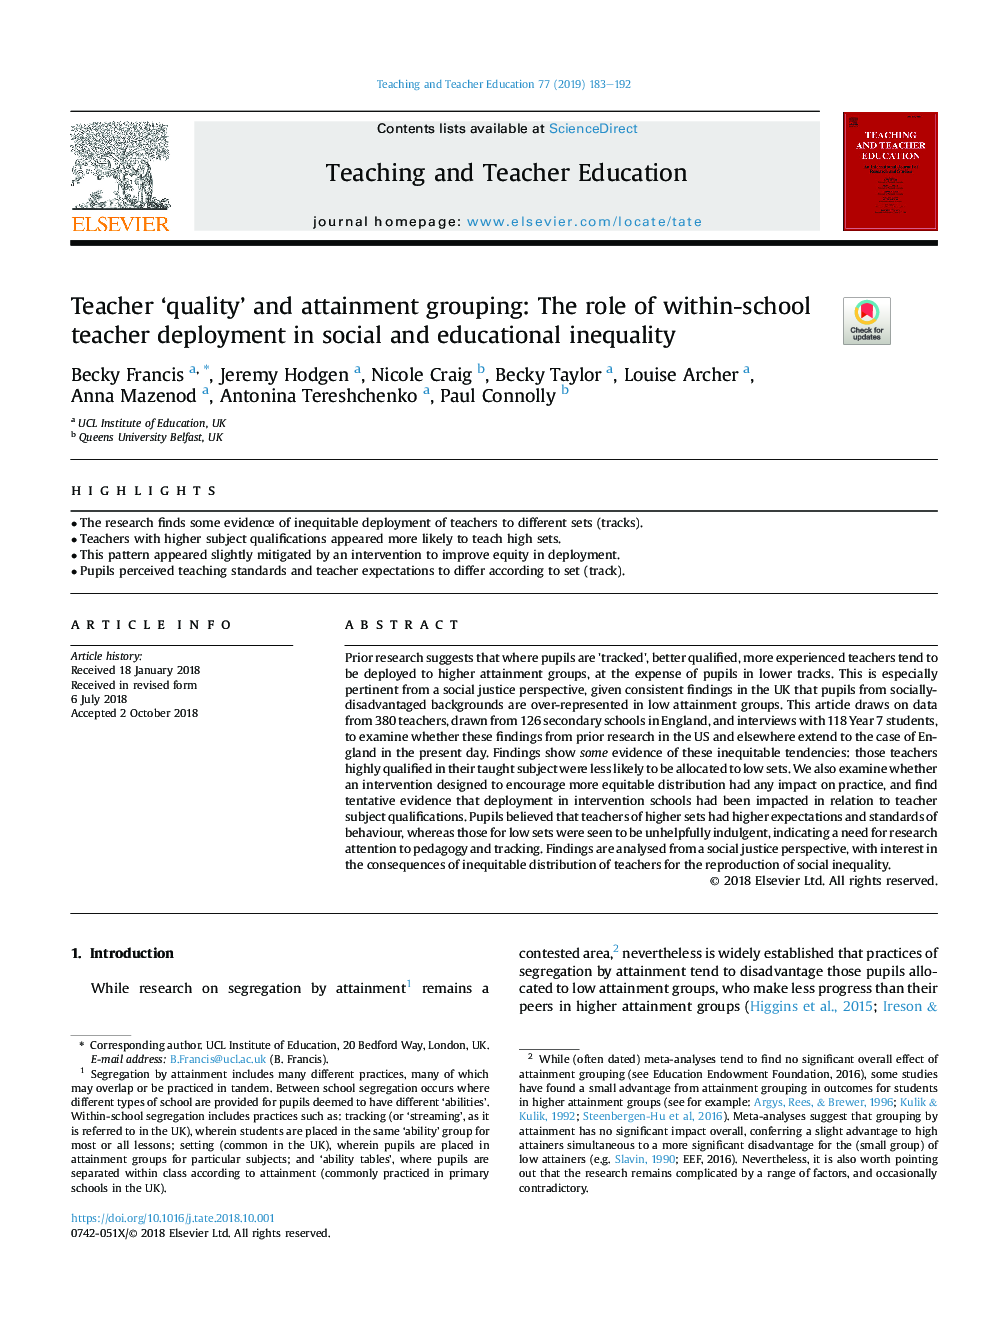 کیفیت "معلم" و گروه های دستیابی به اهداف: نقش معلم درون مدرسه در نابرابری های اجتماعی و آموزشی